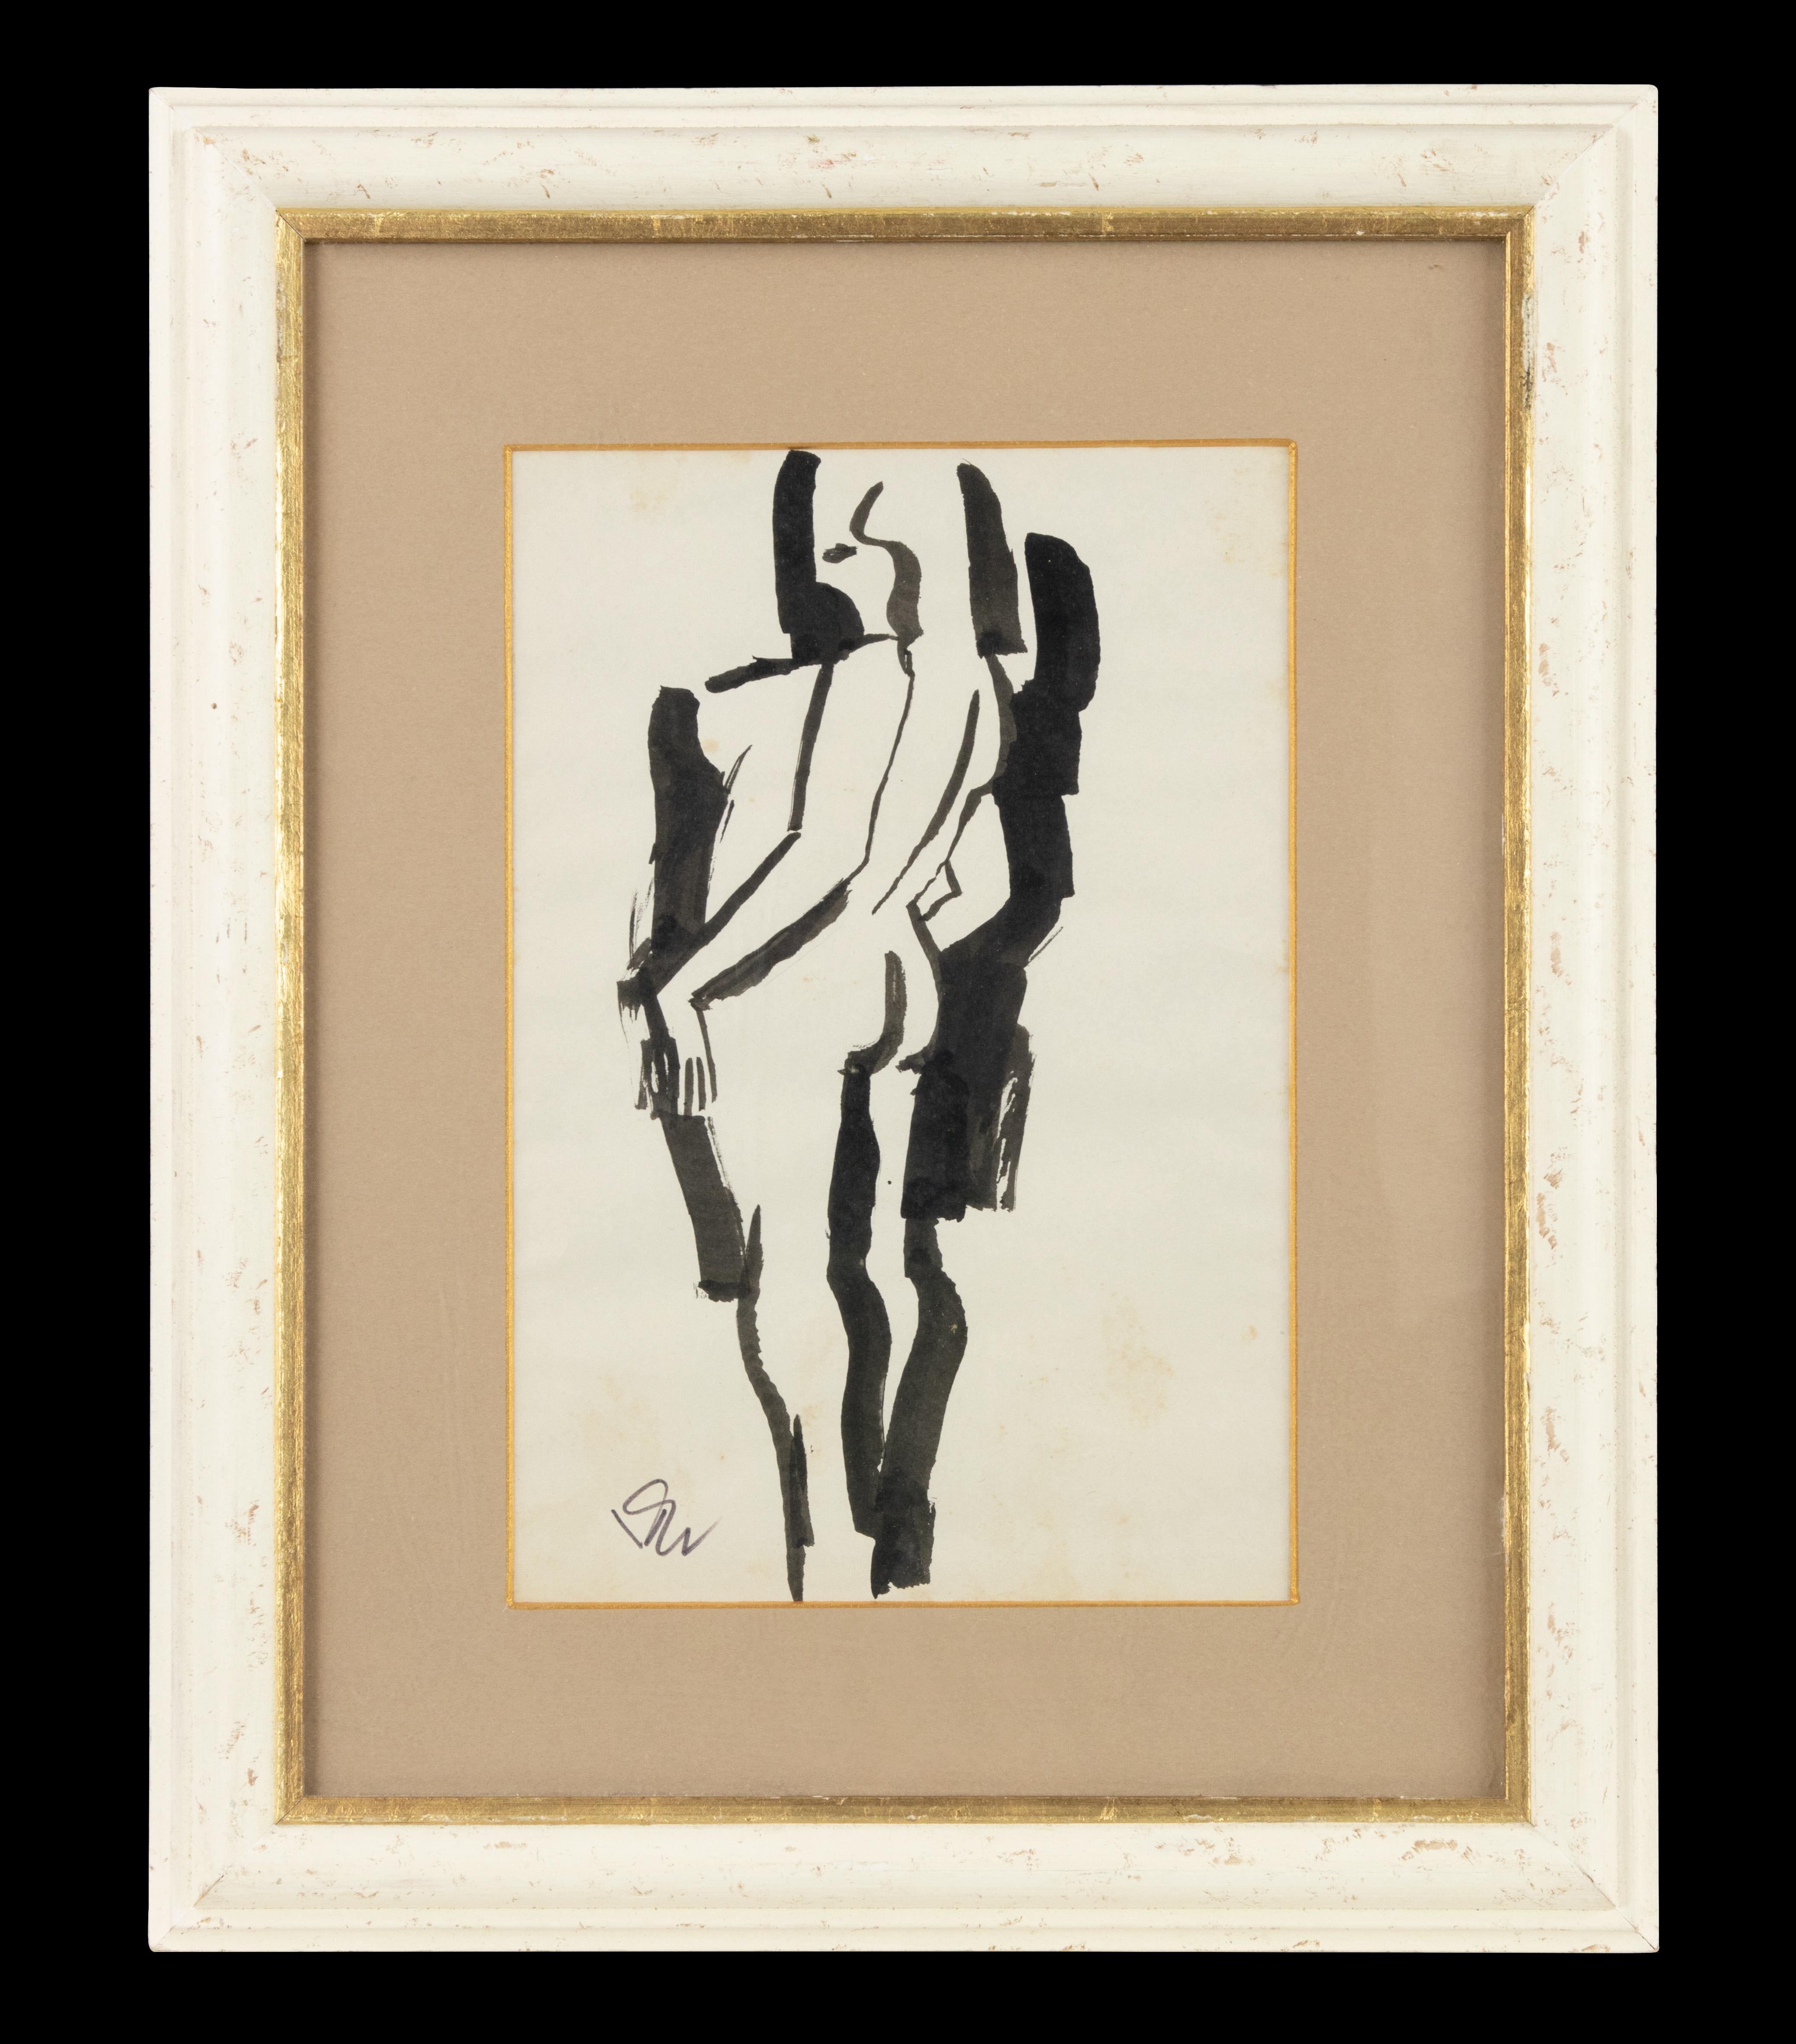 Untitled est une œuvre d'art moderne réalisée par Remo Brindisi dans les années 1970.

Dessin à l'encre de chine en noir et blanc.

Signé à la main dans la marge inférieure.

Cadre inclus : 96 x 1,5 x 75 cm